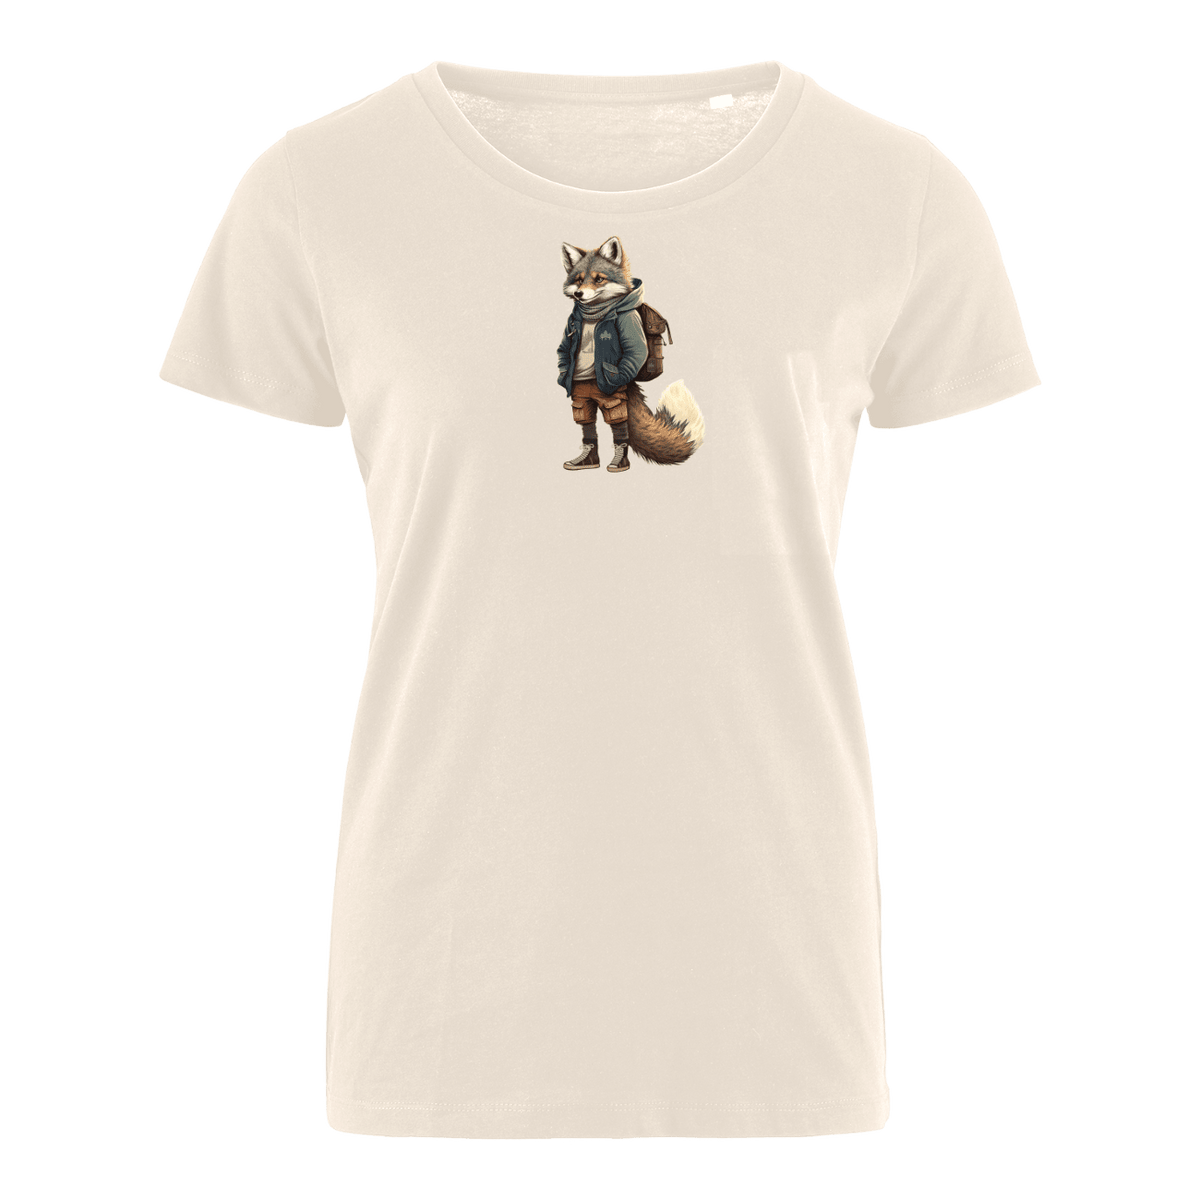 Gerri Wolf - Bio Damen Shirt